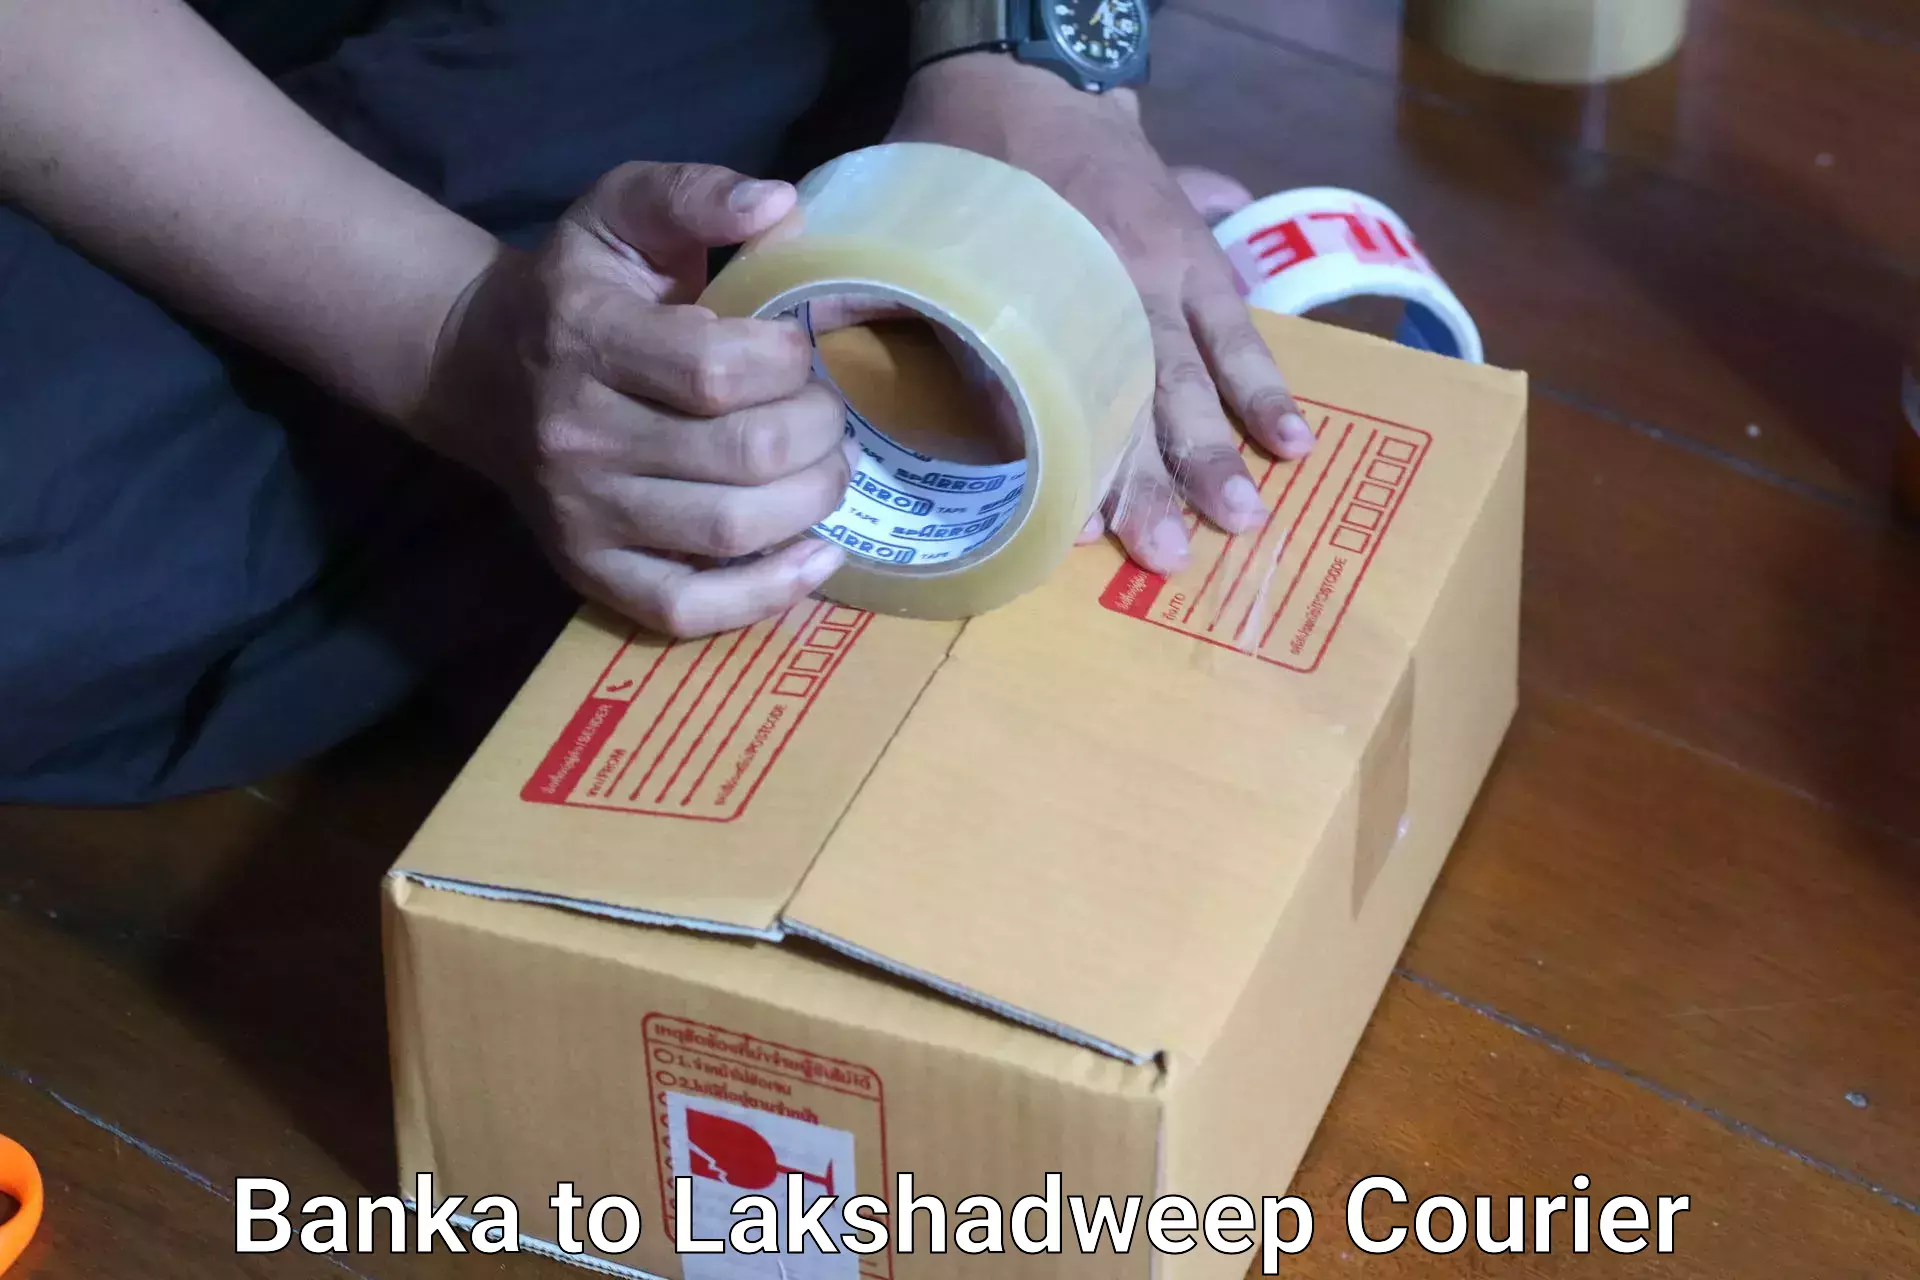 Door-to-door baggage service Banka to Lakshadweep